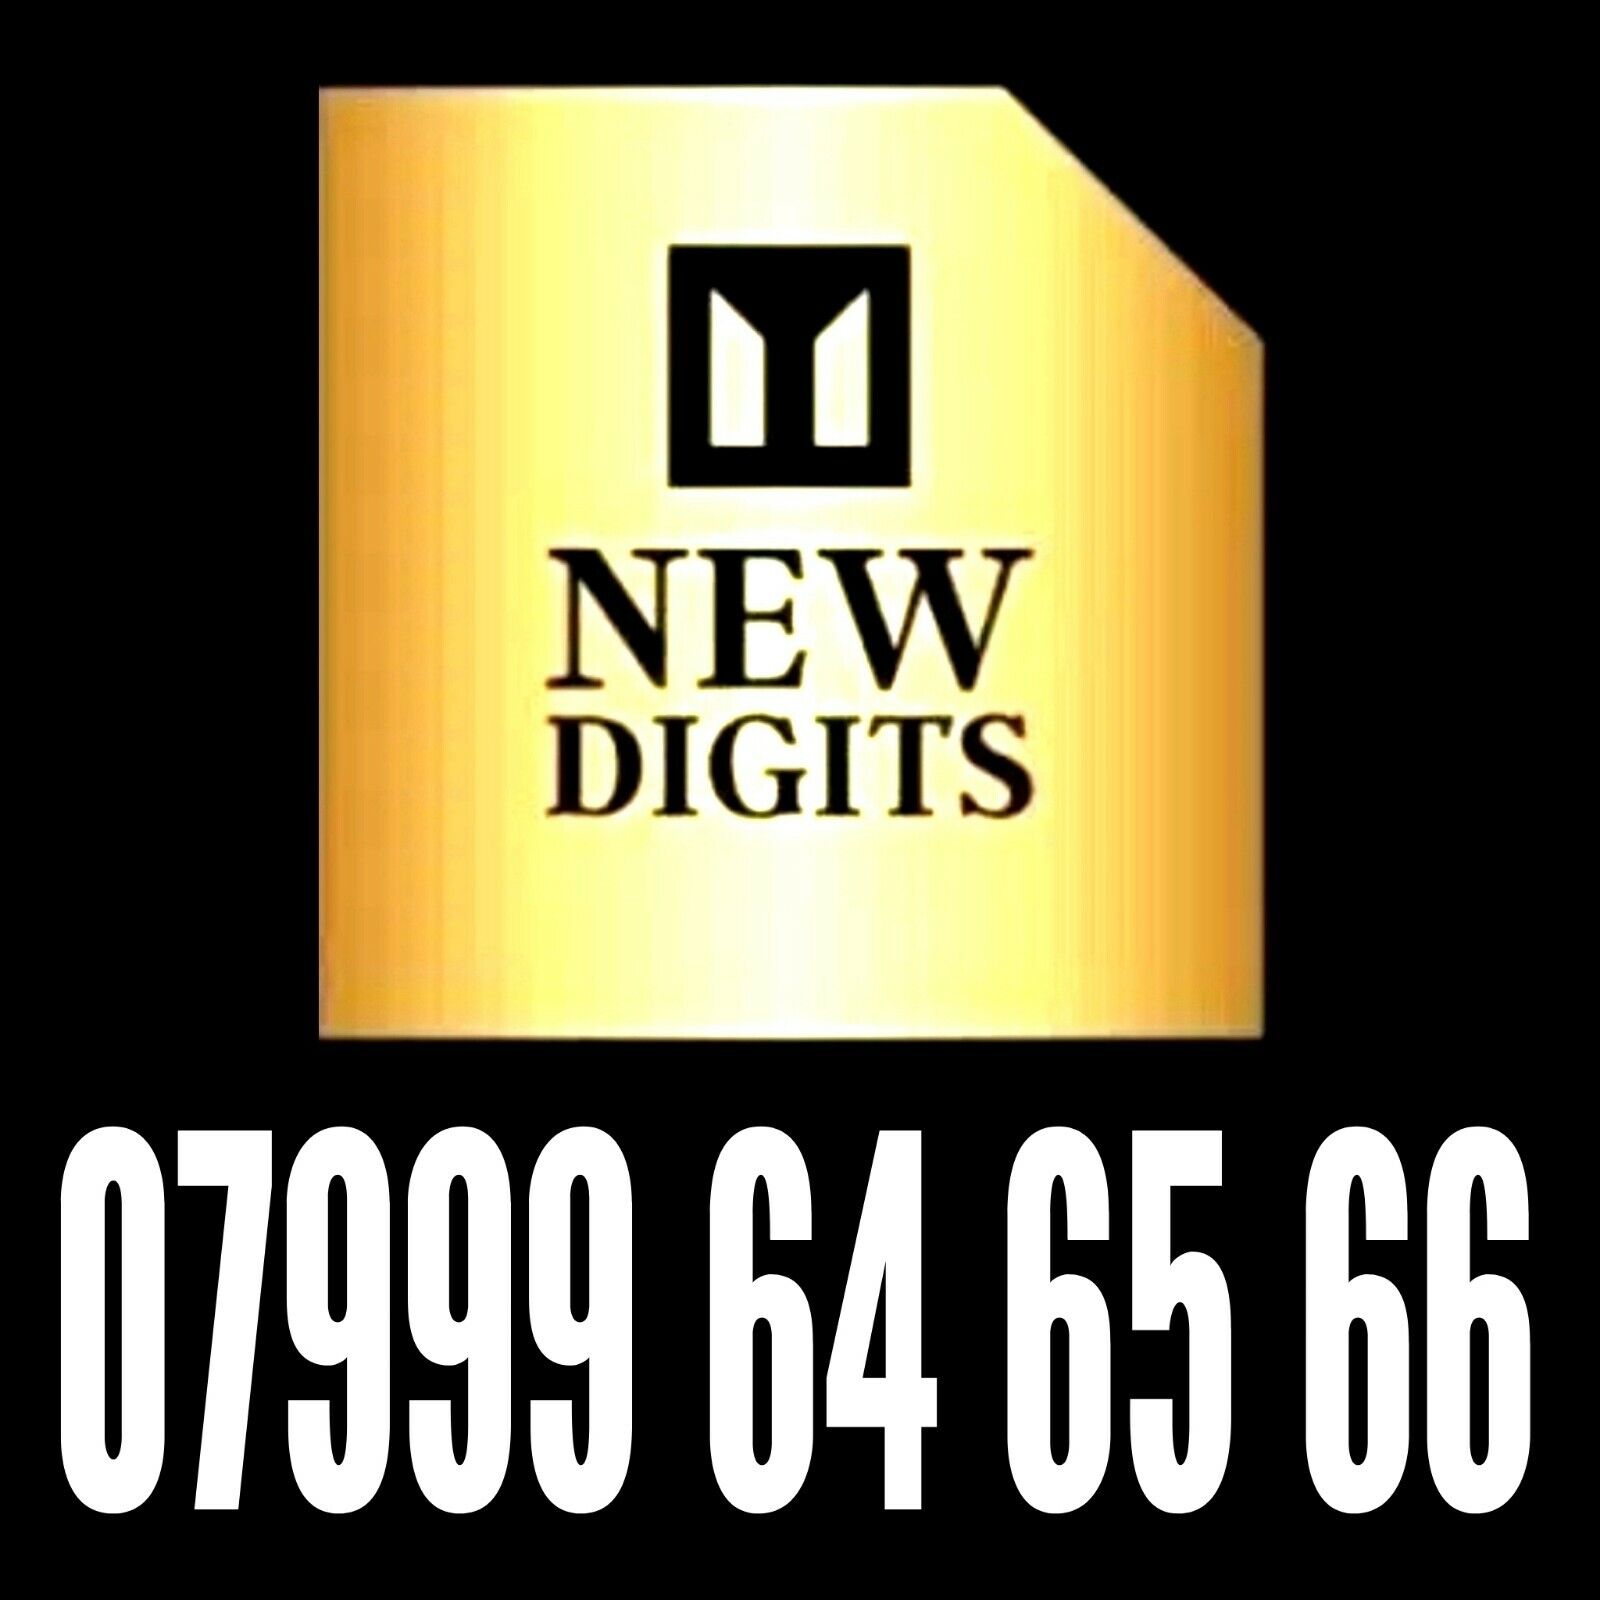 GOLD EASY MEMORABLE UK UNIQUE MOBILE PHONE NUMBER SIM CARD EXCLUSIVE BUSINESS Populaire uitverkoop, geweldige aanbiedingen